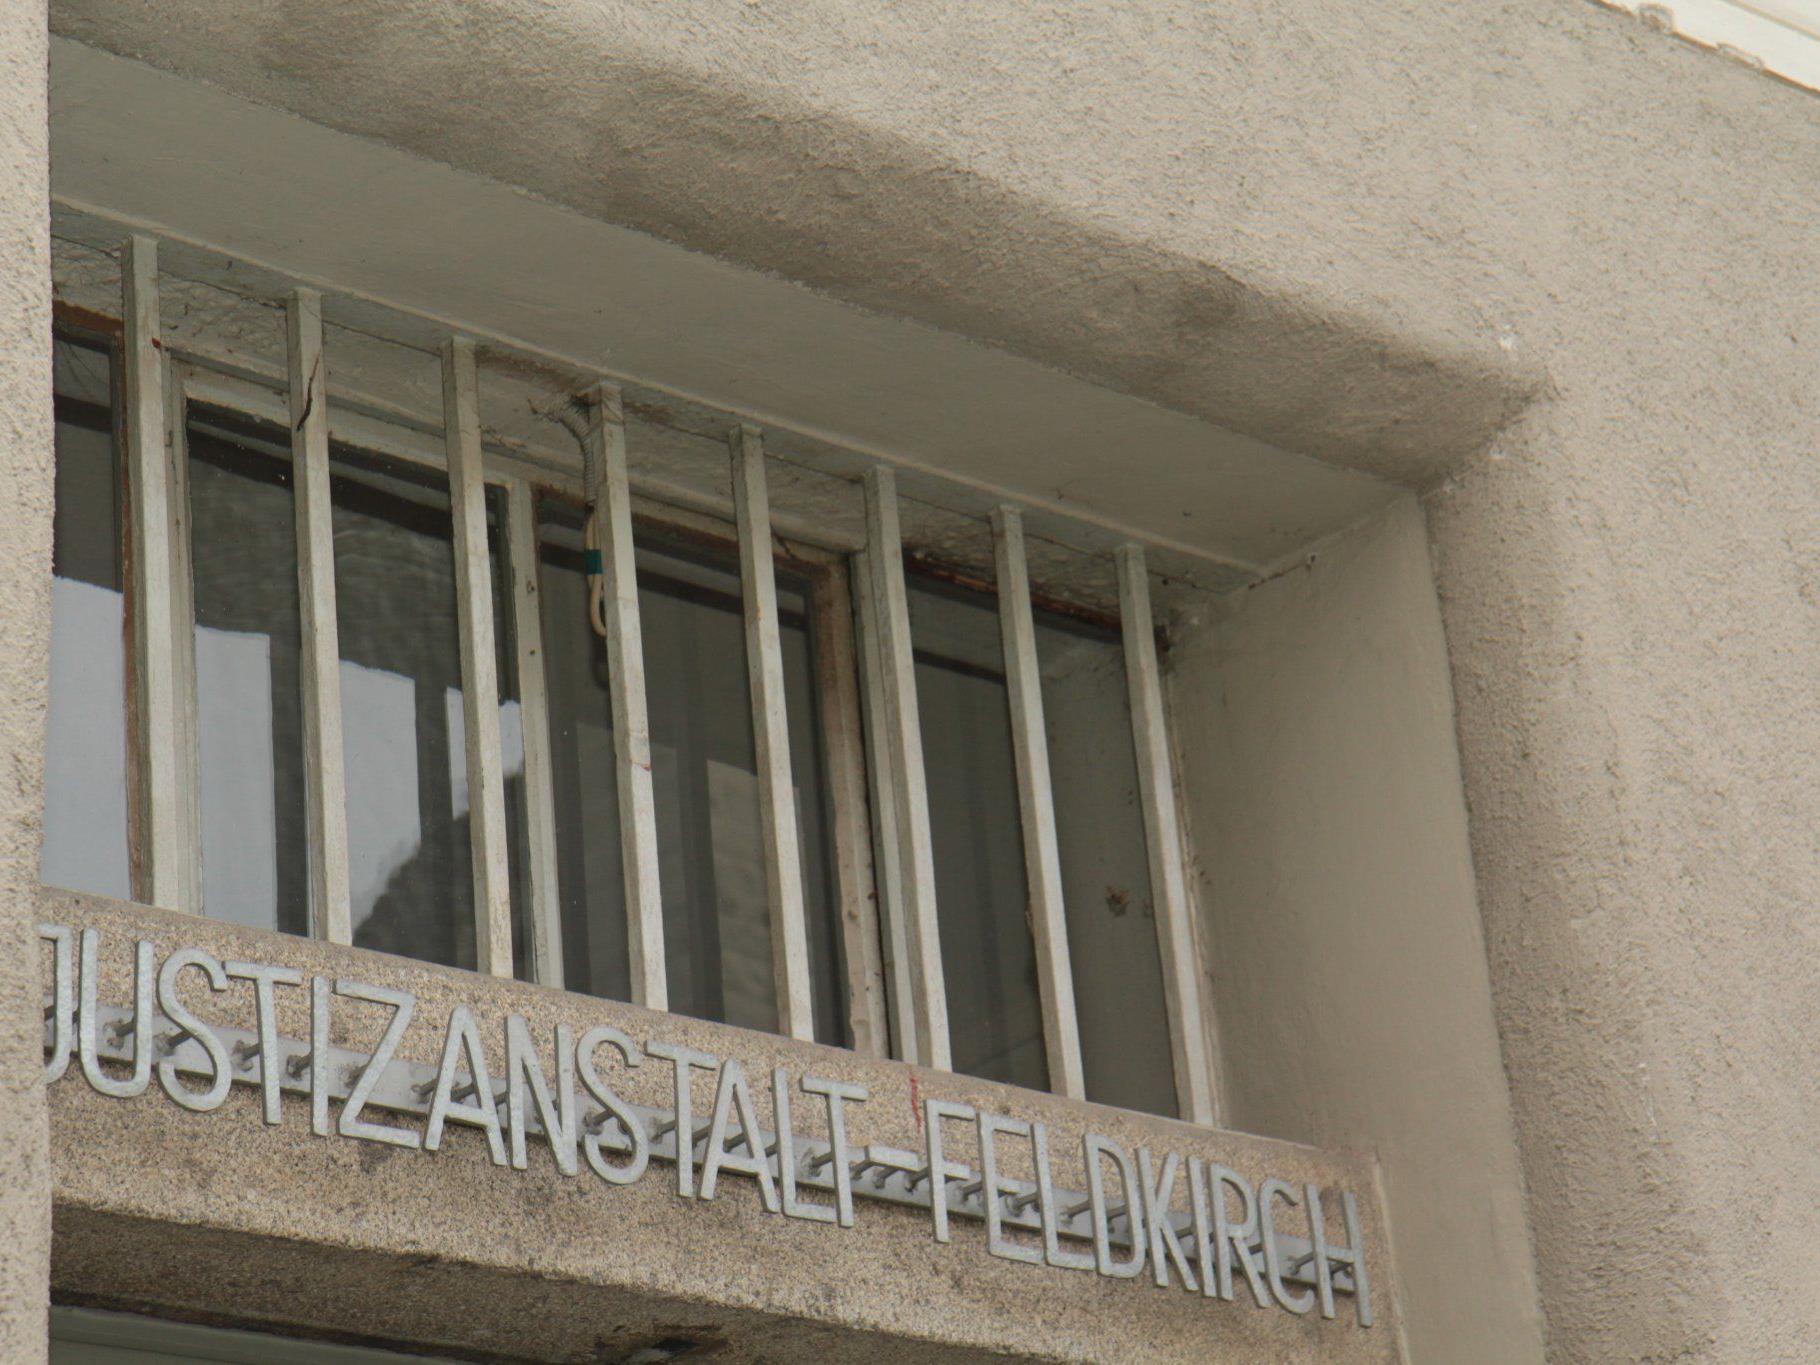 Verhaftung international gesuchter Einbrecher in Bregenz.